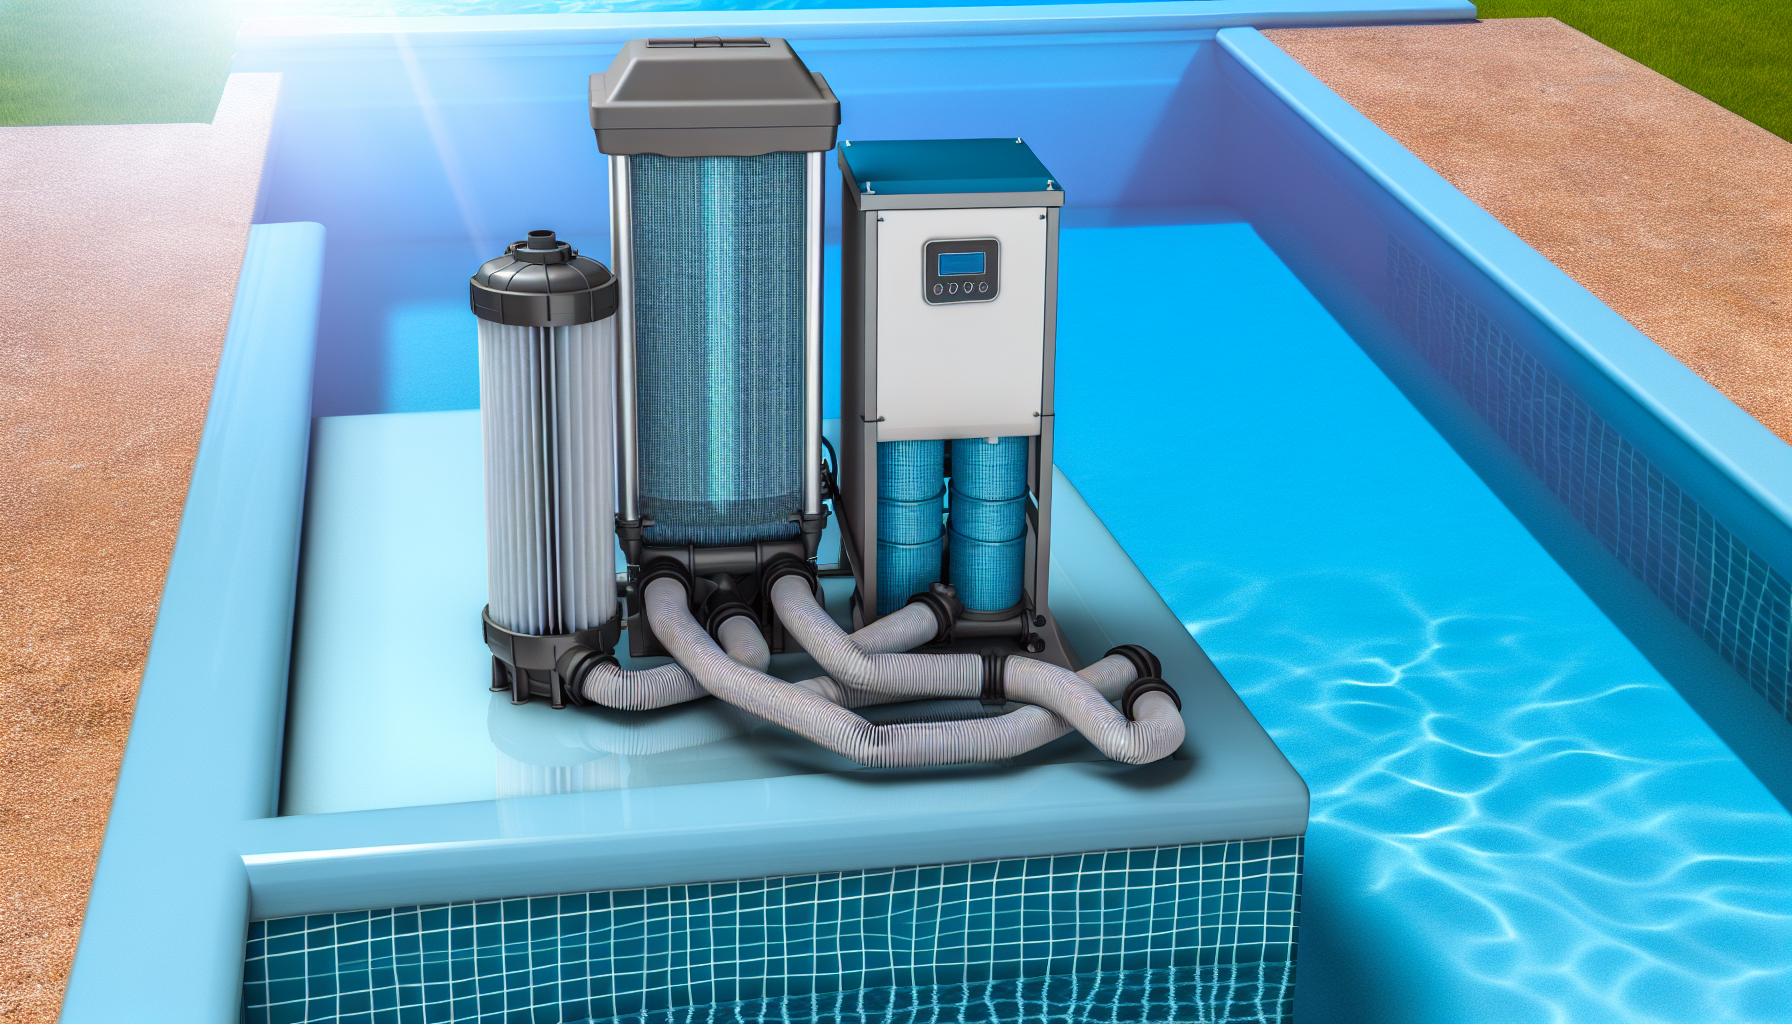 Swimmingpool-Filtrationsanlage mit Verrohrung und verschiedenen Komponenten am Rand eines Pools.